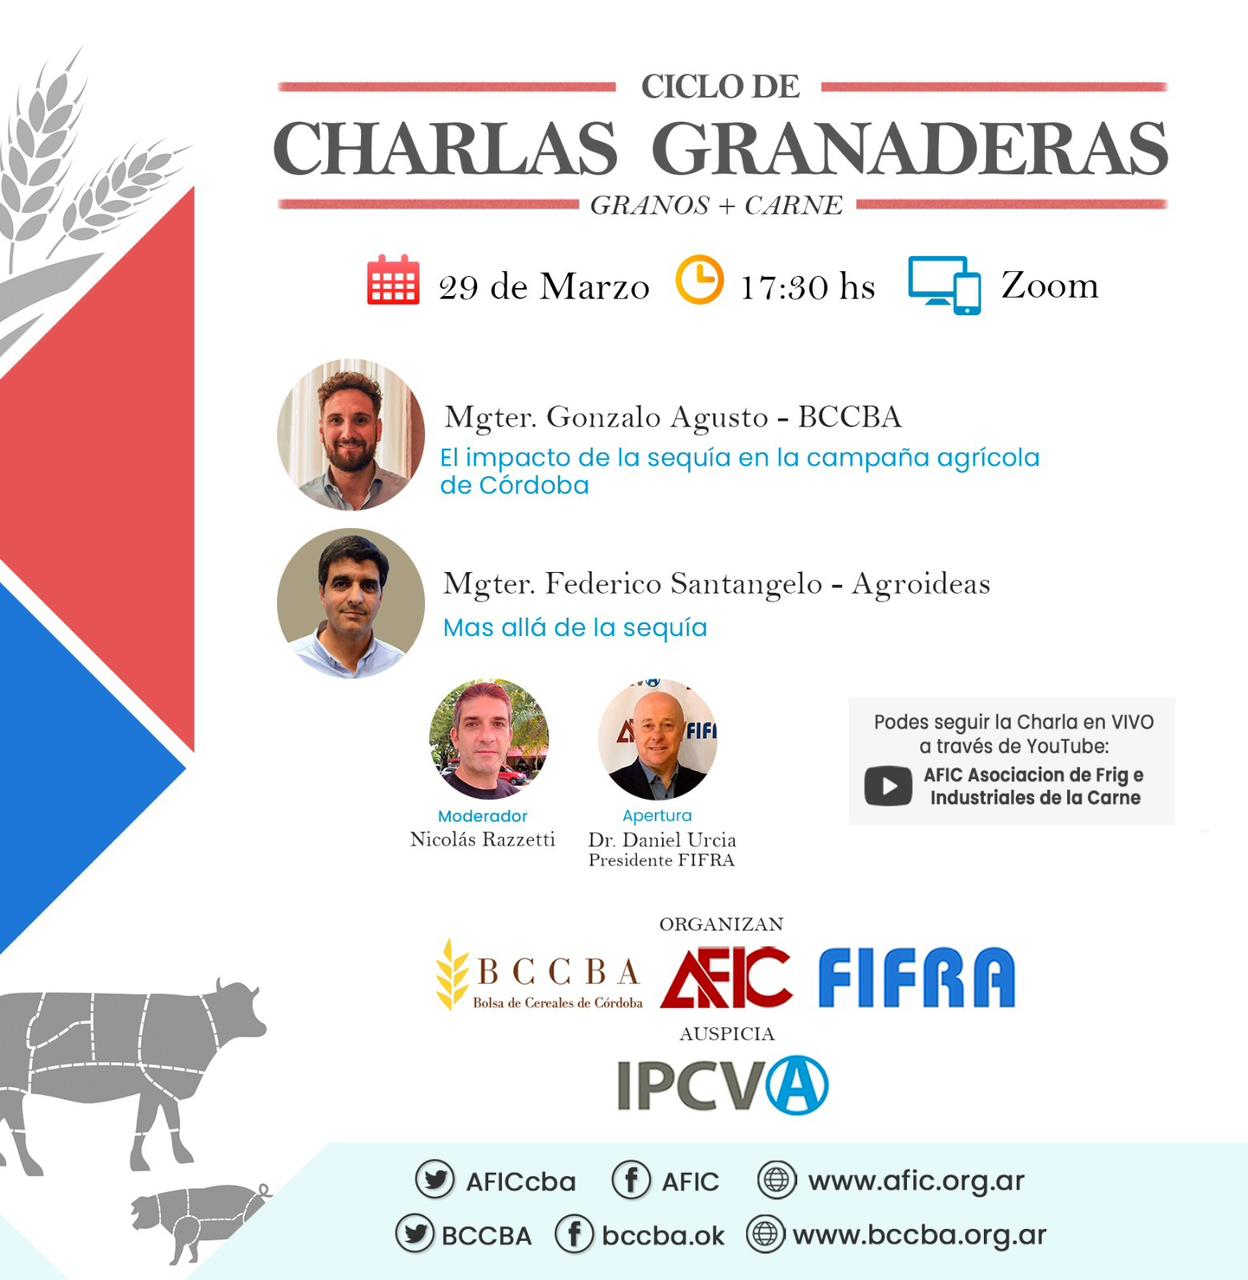 Charlas granaderas (granos + carne) con Urcía, Agusto y Santángelo mañana desde las 17.30 horas